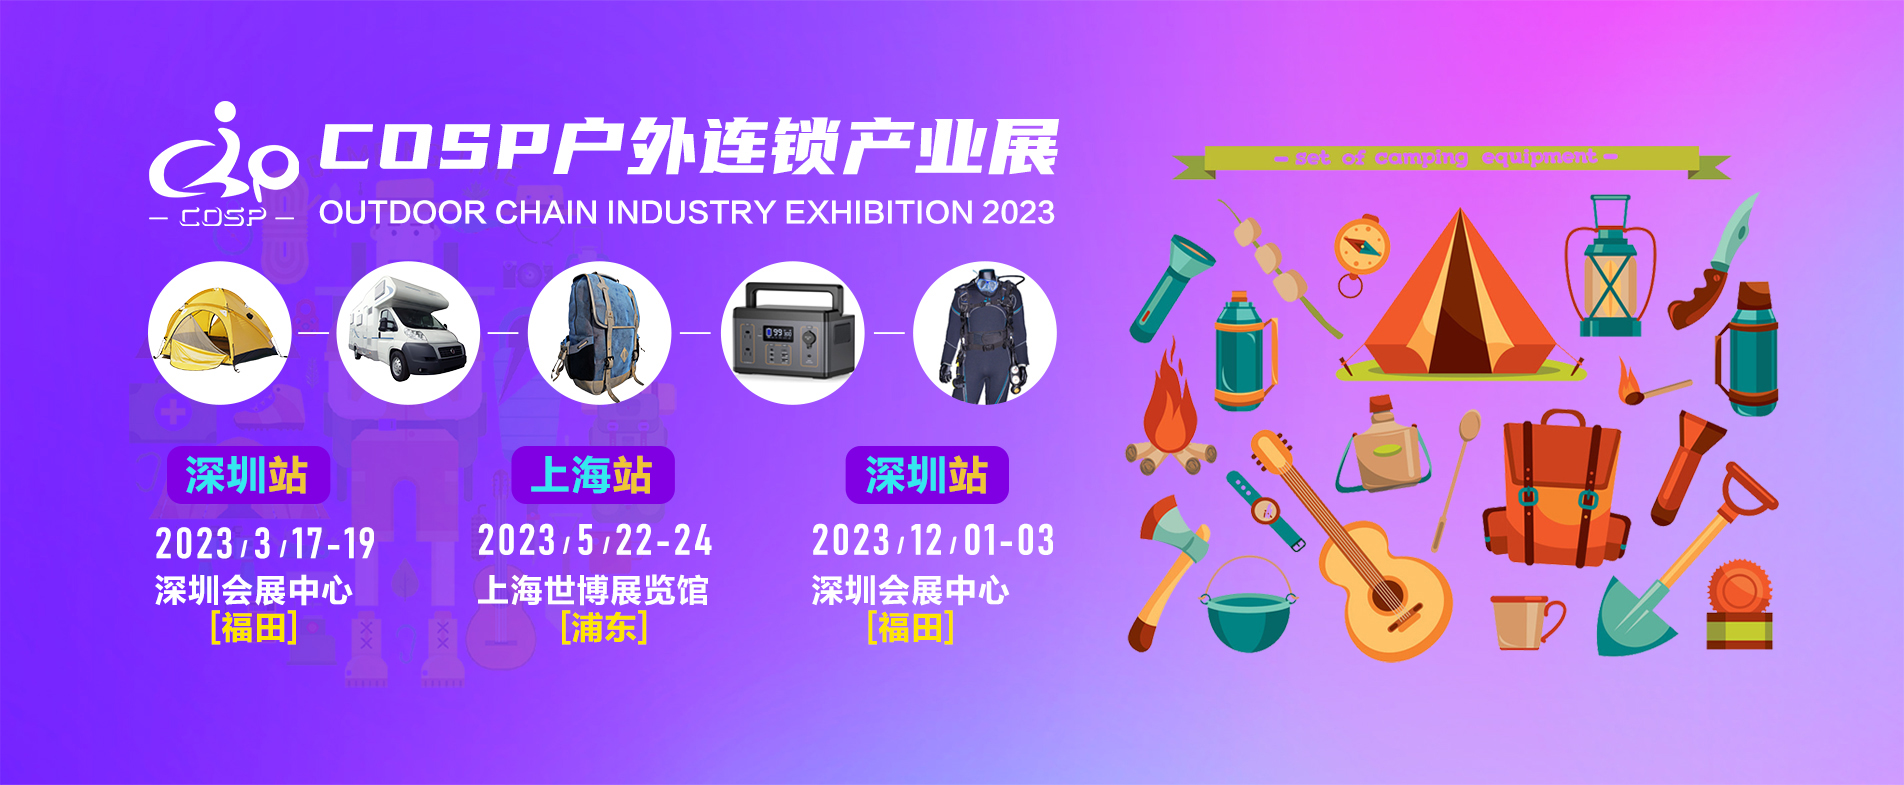 2022年COSP深圳国际户外运动展览会